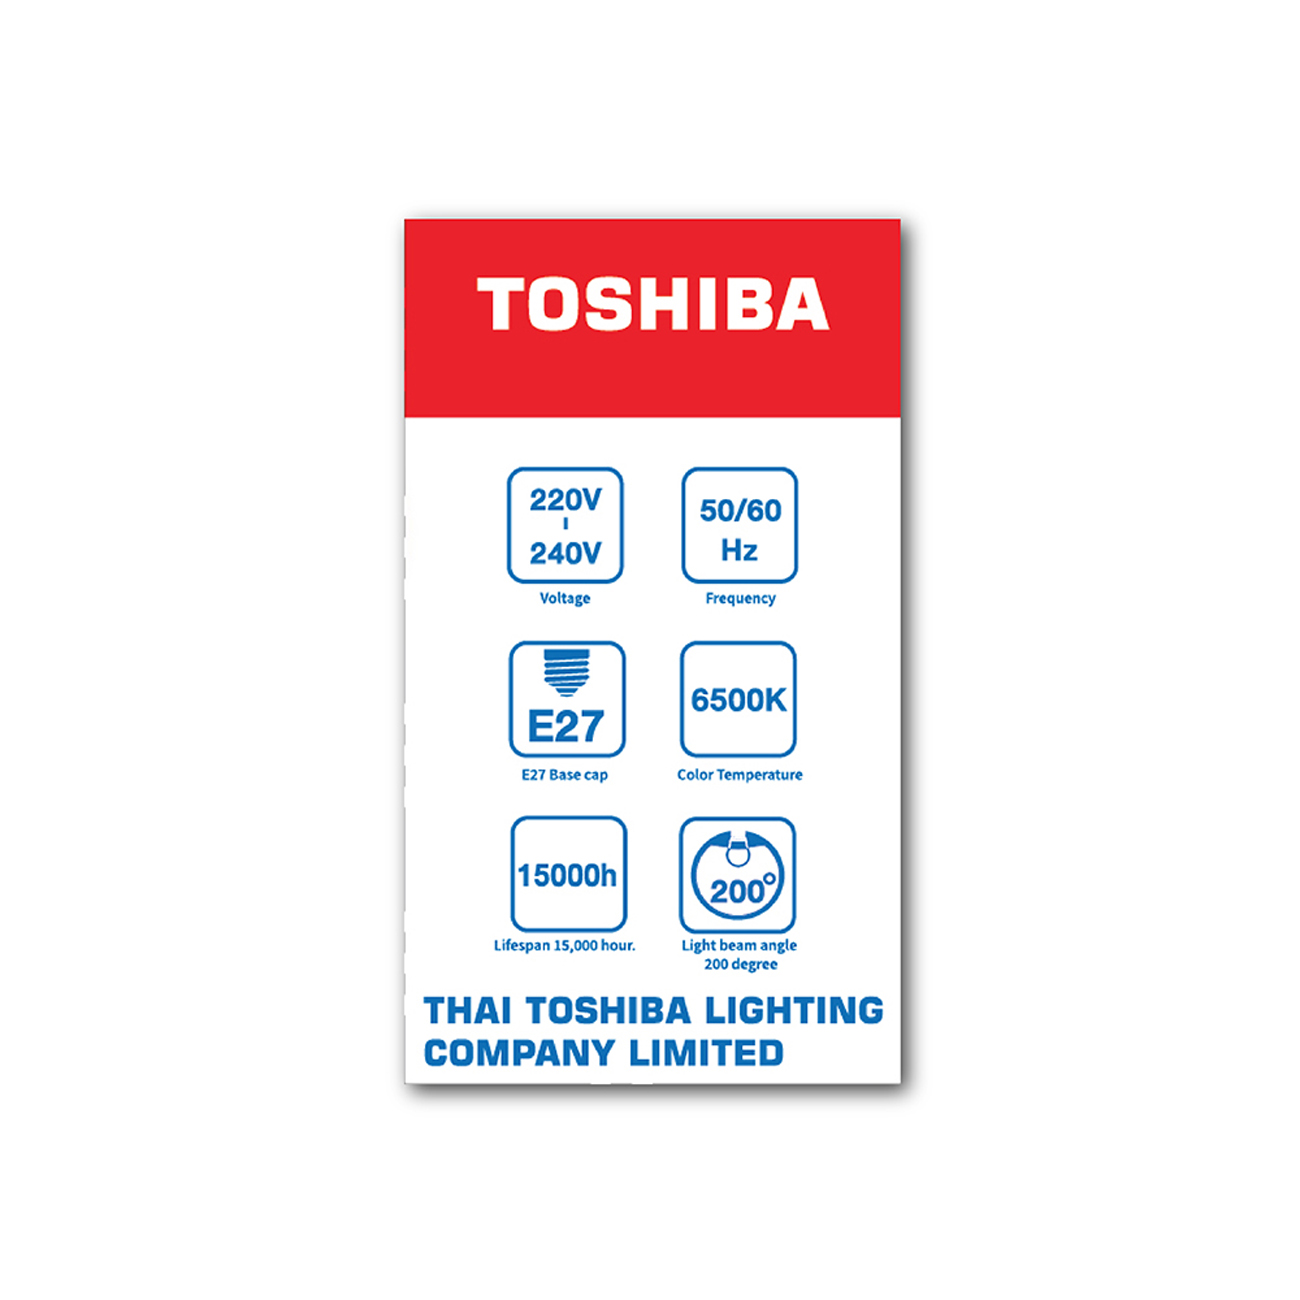 TOSHIBA-FT-LED-A60-068-หลอดไฟ-LED-A60-9-วัตต์-แสงเดย์ไลท์-E27